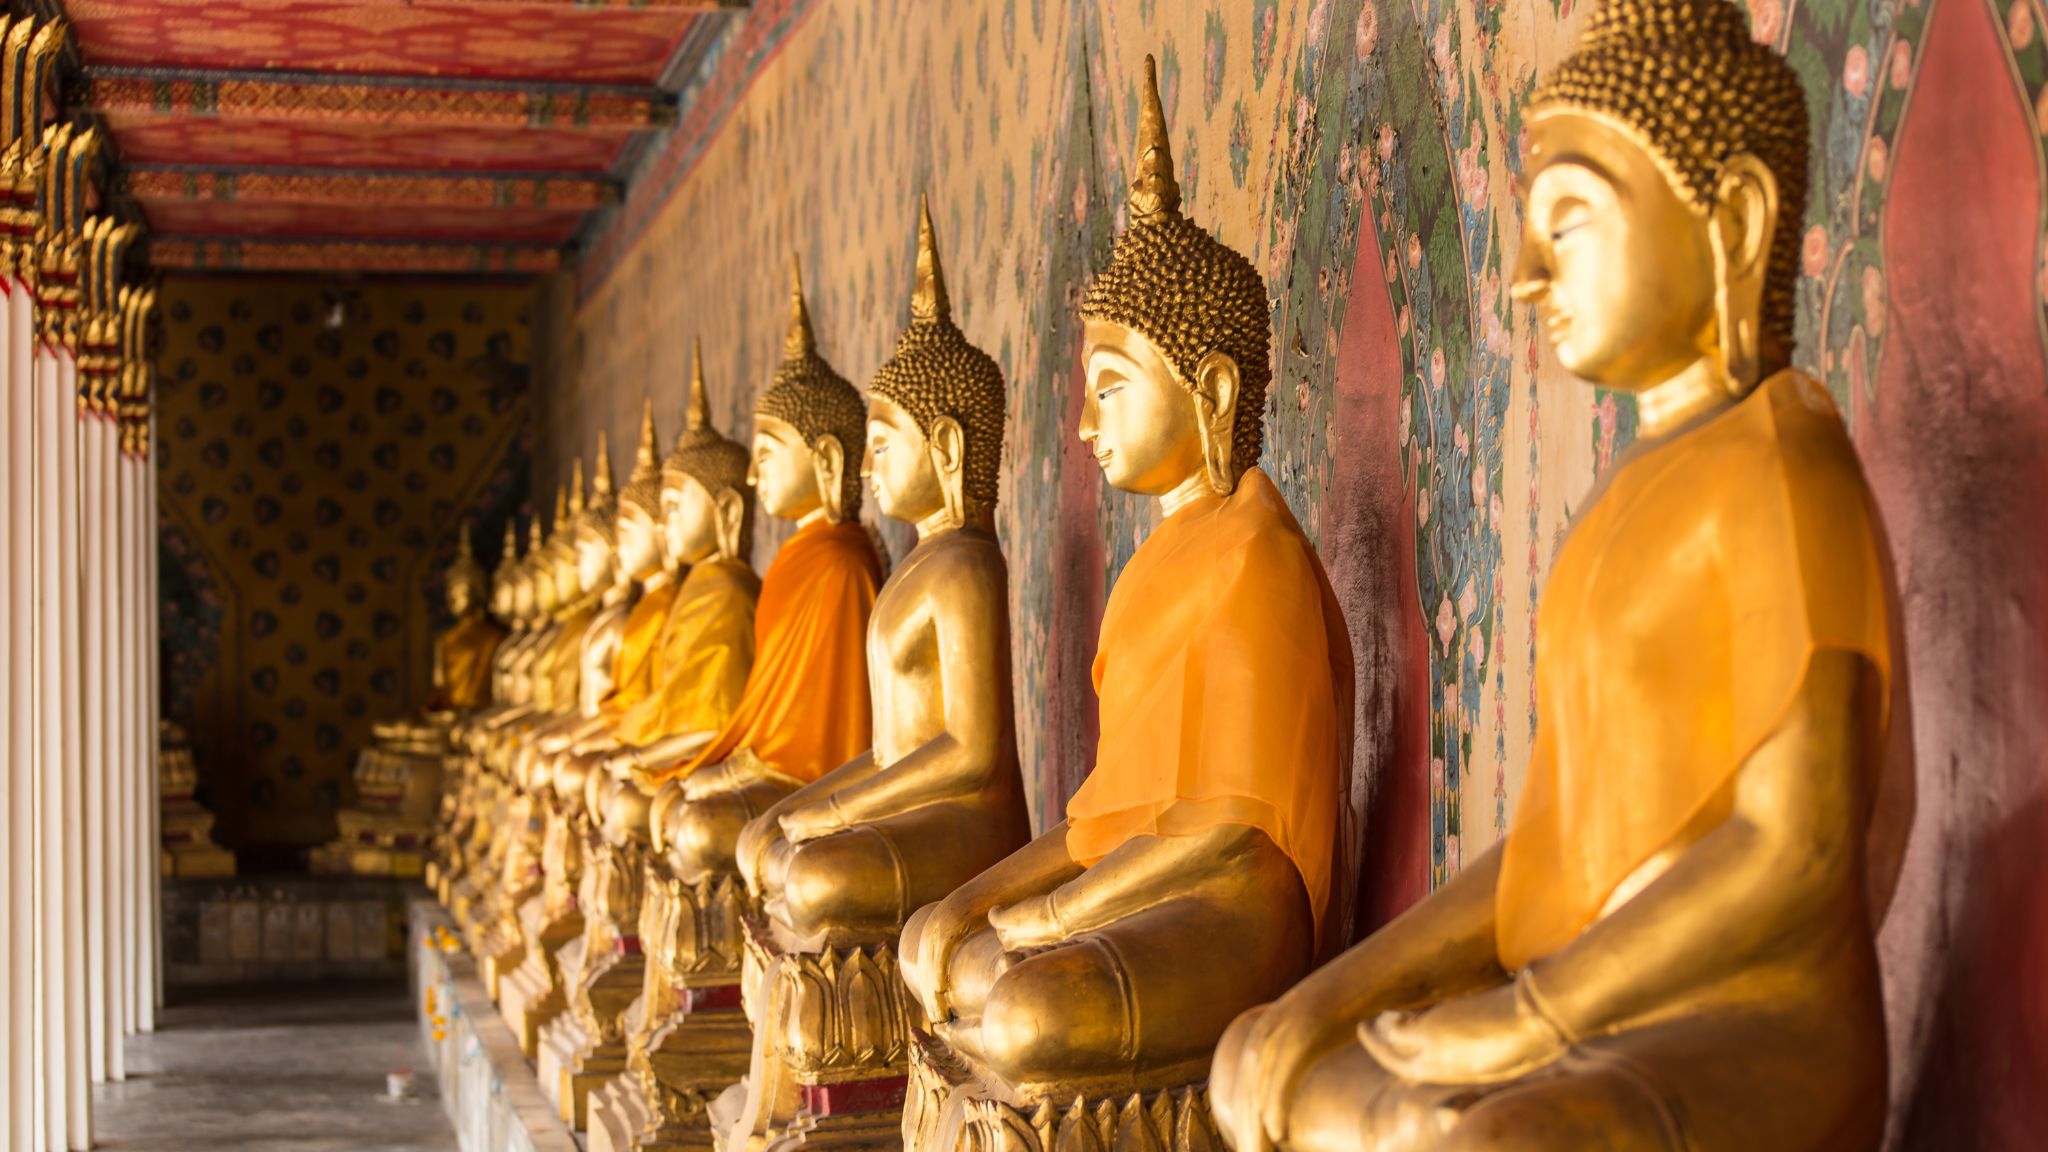 Day 2 Budha Statues At Wat Pho